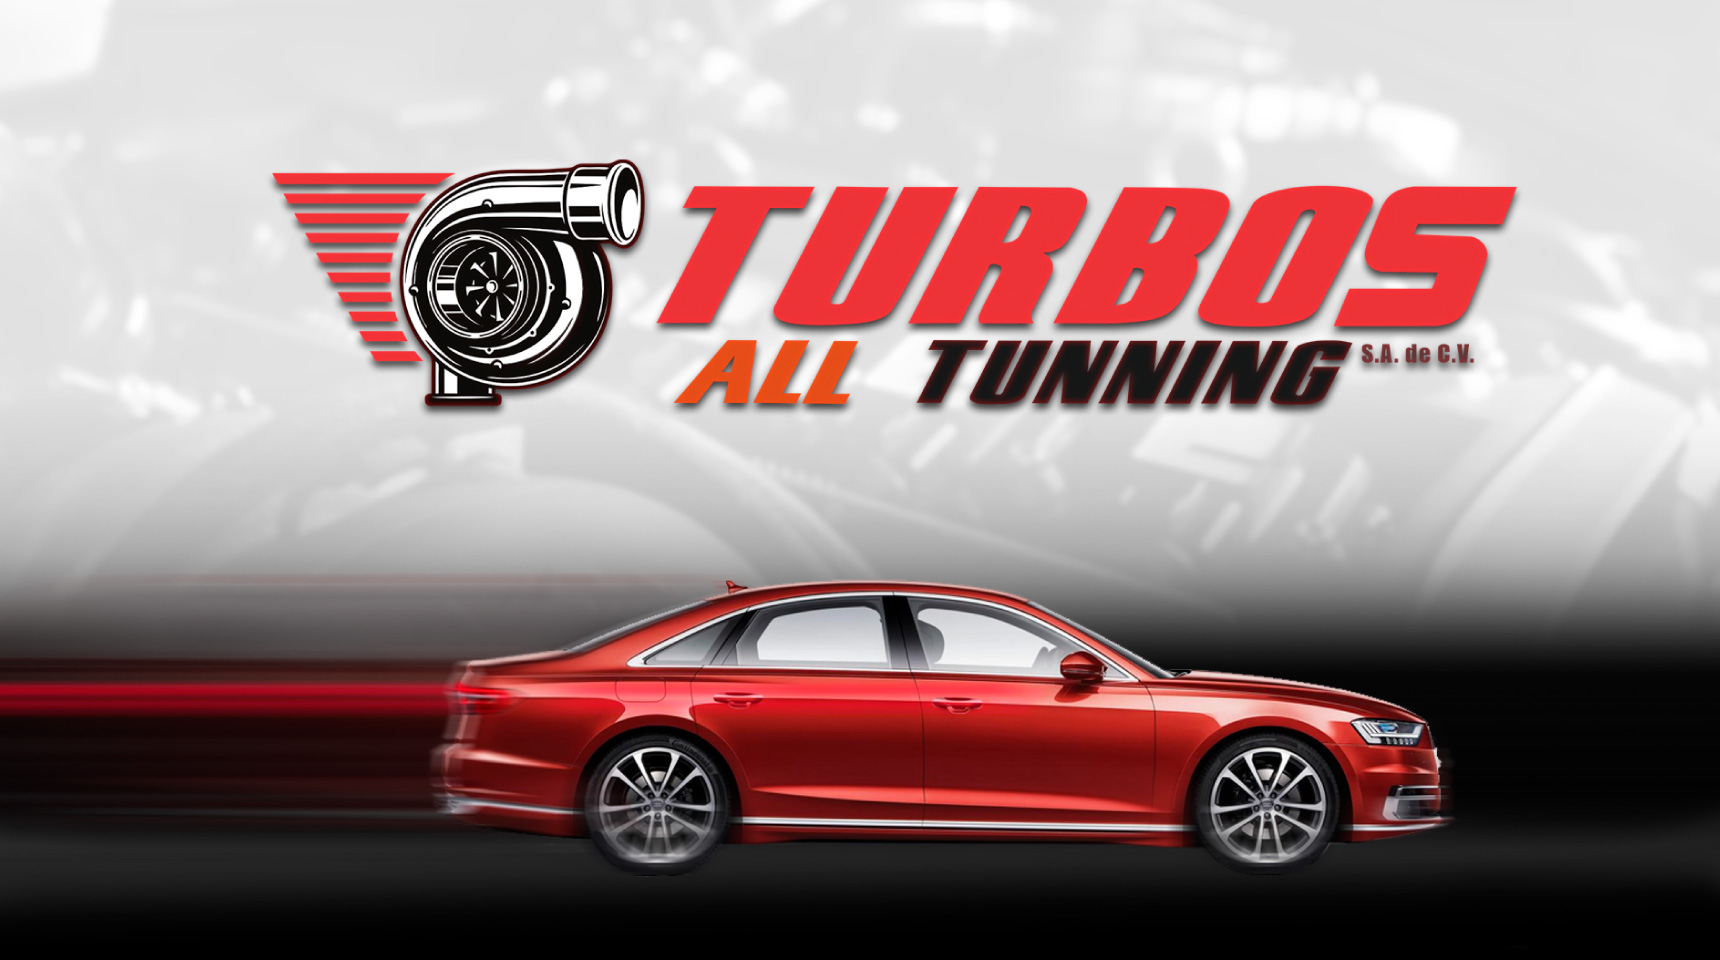 Turbos_AllTunning_Turbos